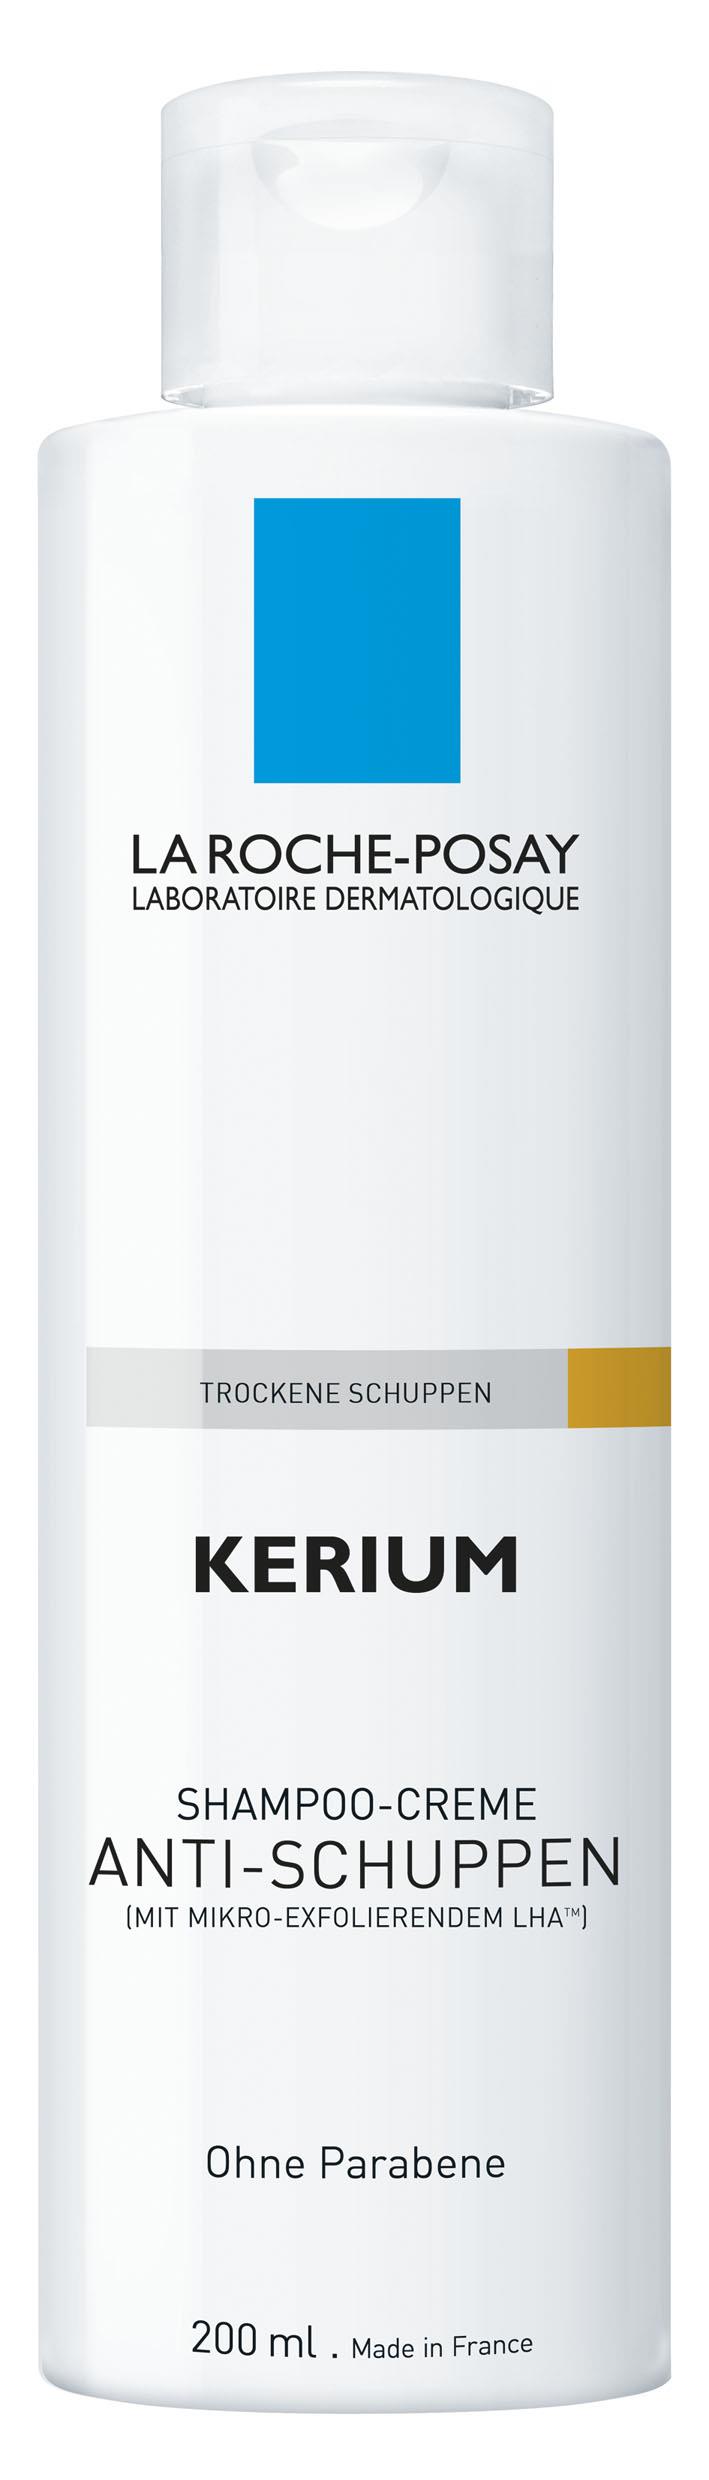 La Roche-Posay KERIUM Anti-Schuppen Shampoo Creme